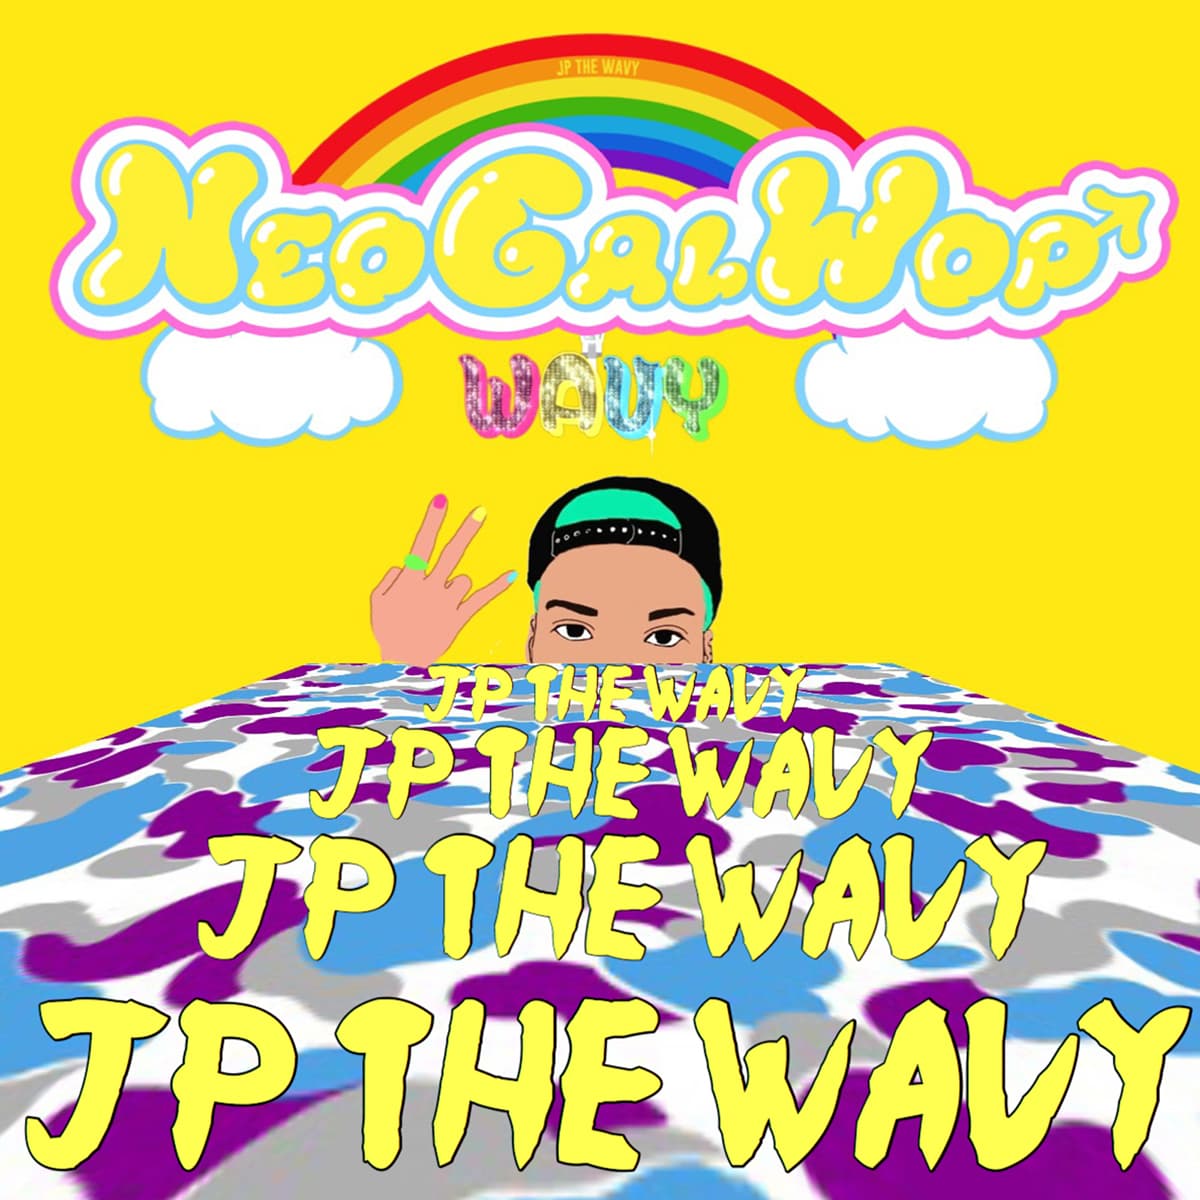 JP THE WAVY - “Neo Gal Wop” Release